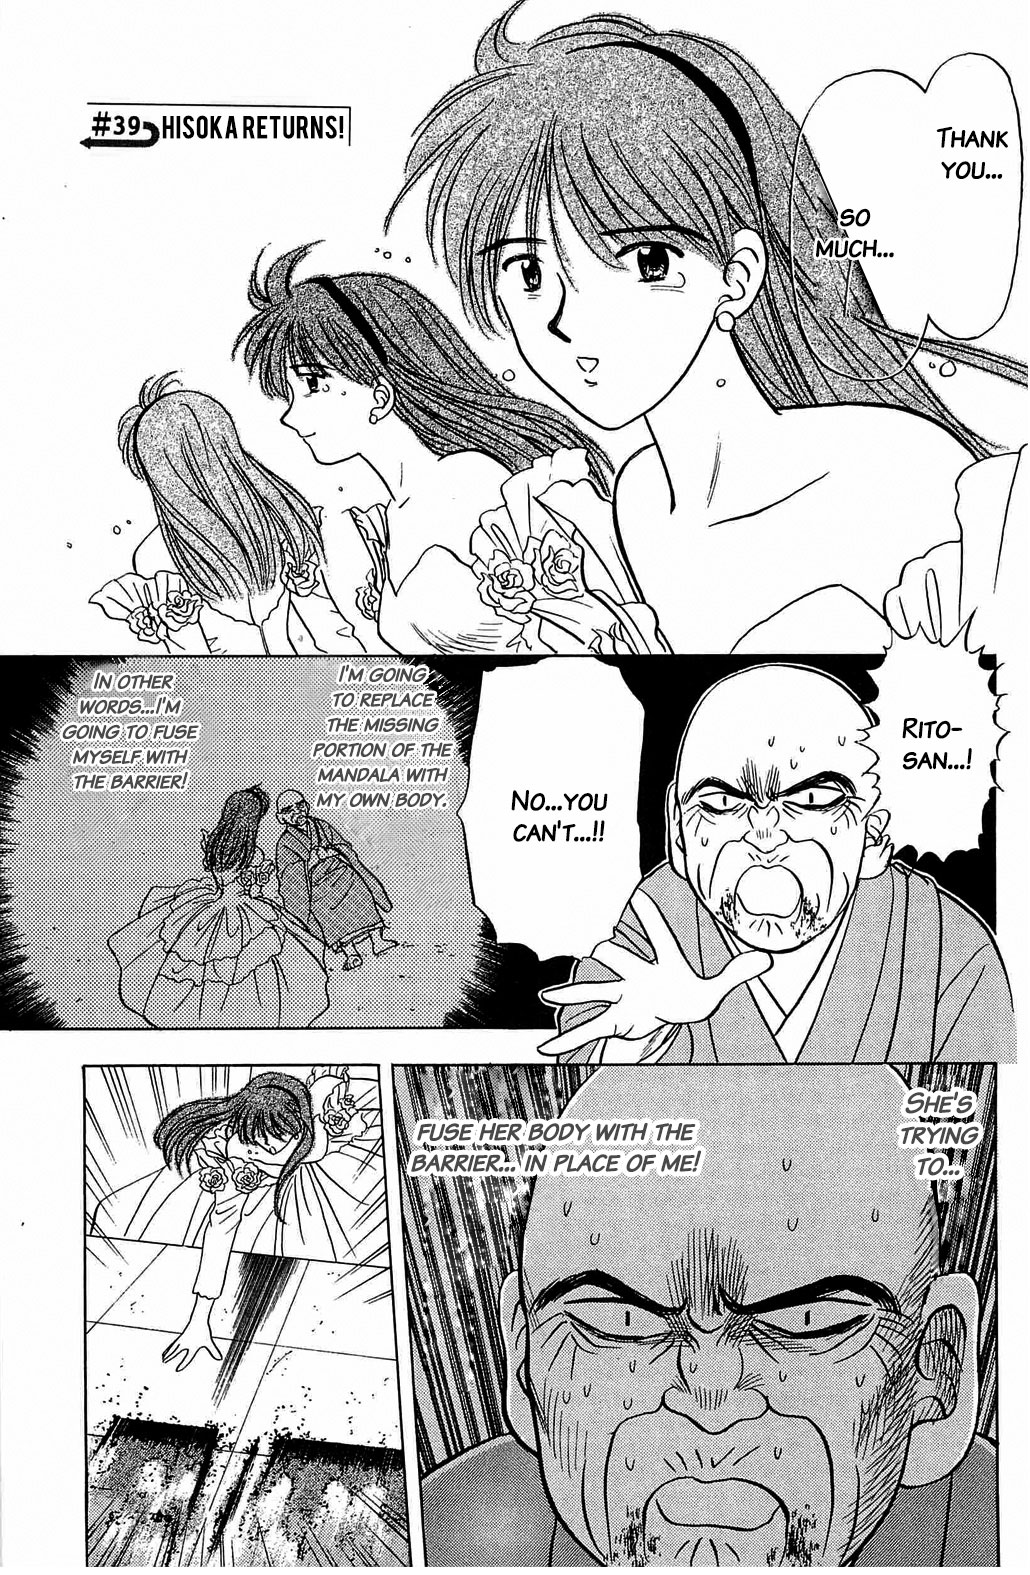 Hisoka Returns Vol.2 Chapter 39: Hisoka Returns! - Picture 1